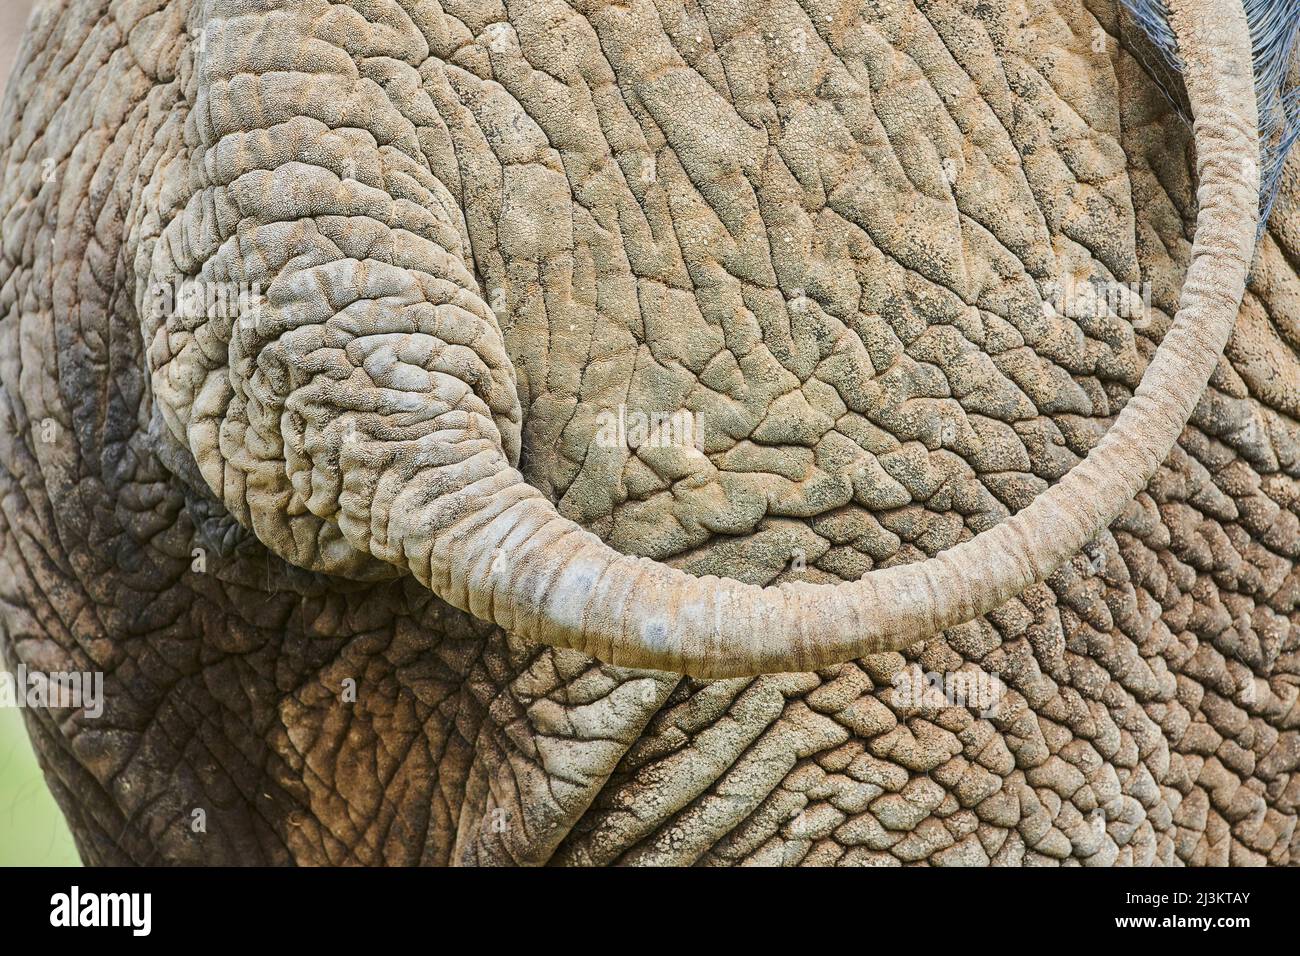 Primo piano particolare della pelle rugosa, posteriore e coda di un elefante africano cespuglio (Loxodonta africana), prigioniero; Repubblica Ceca Foto Stock